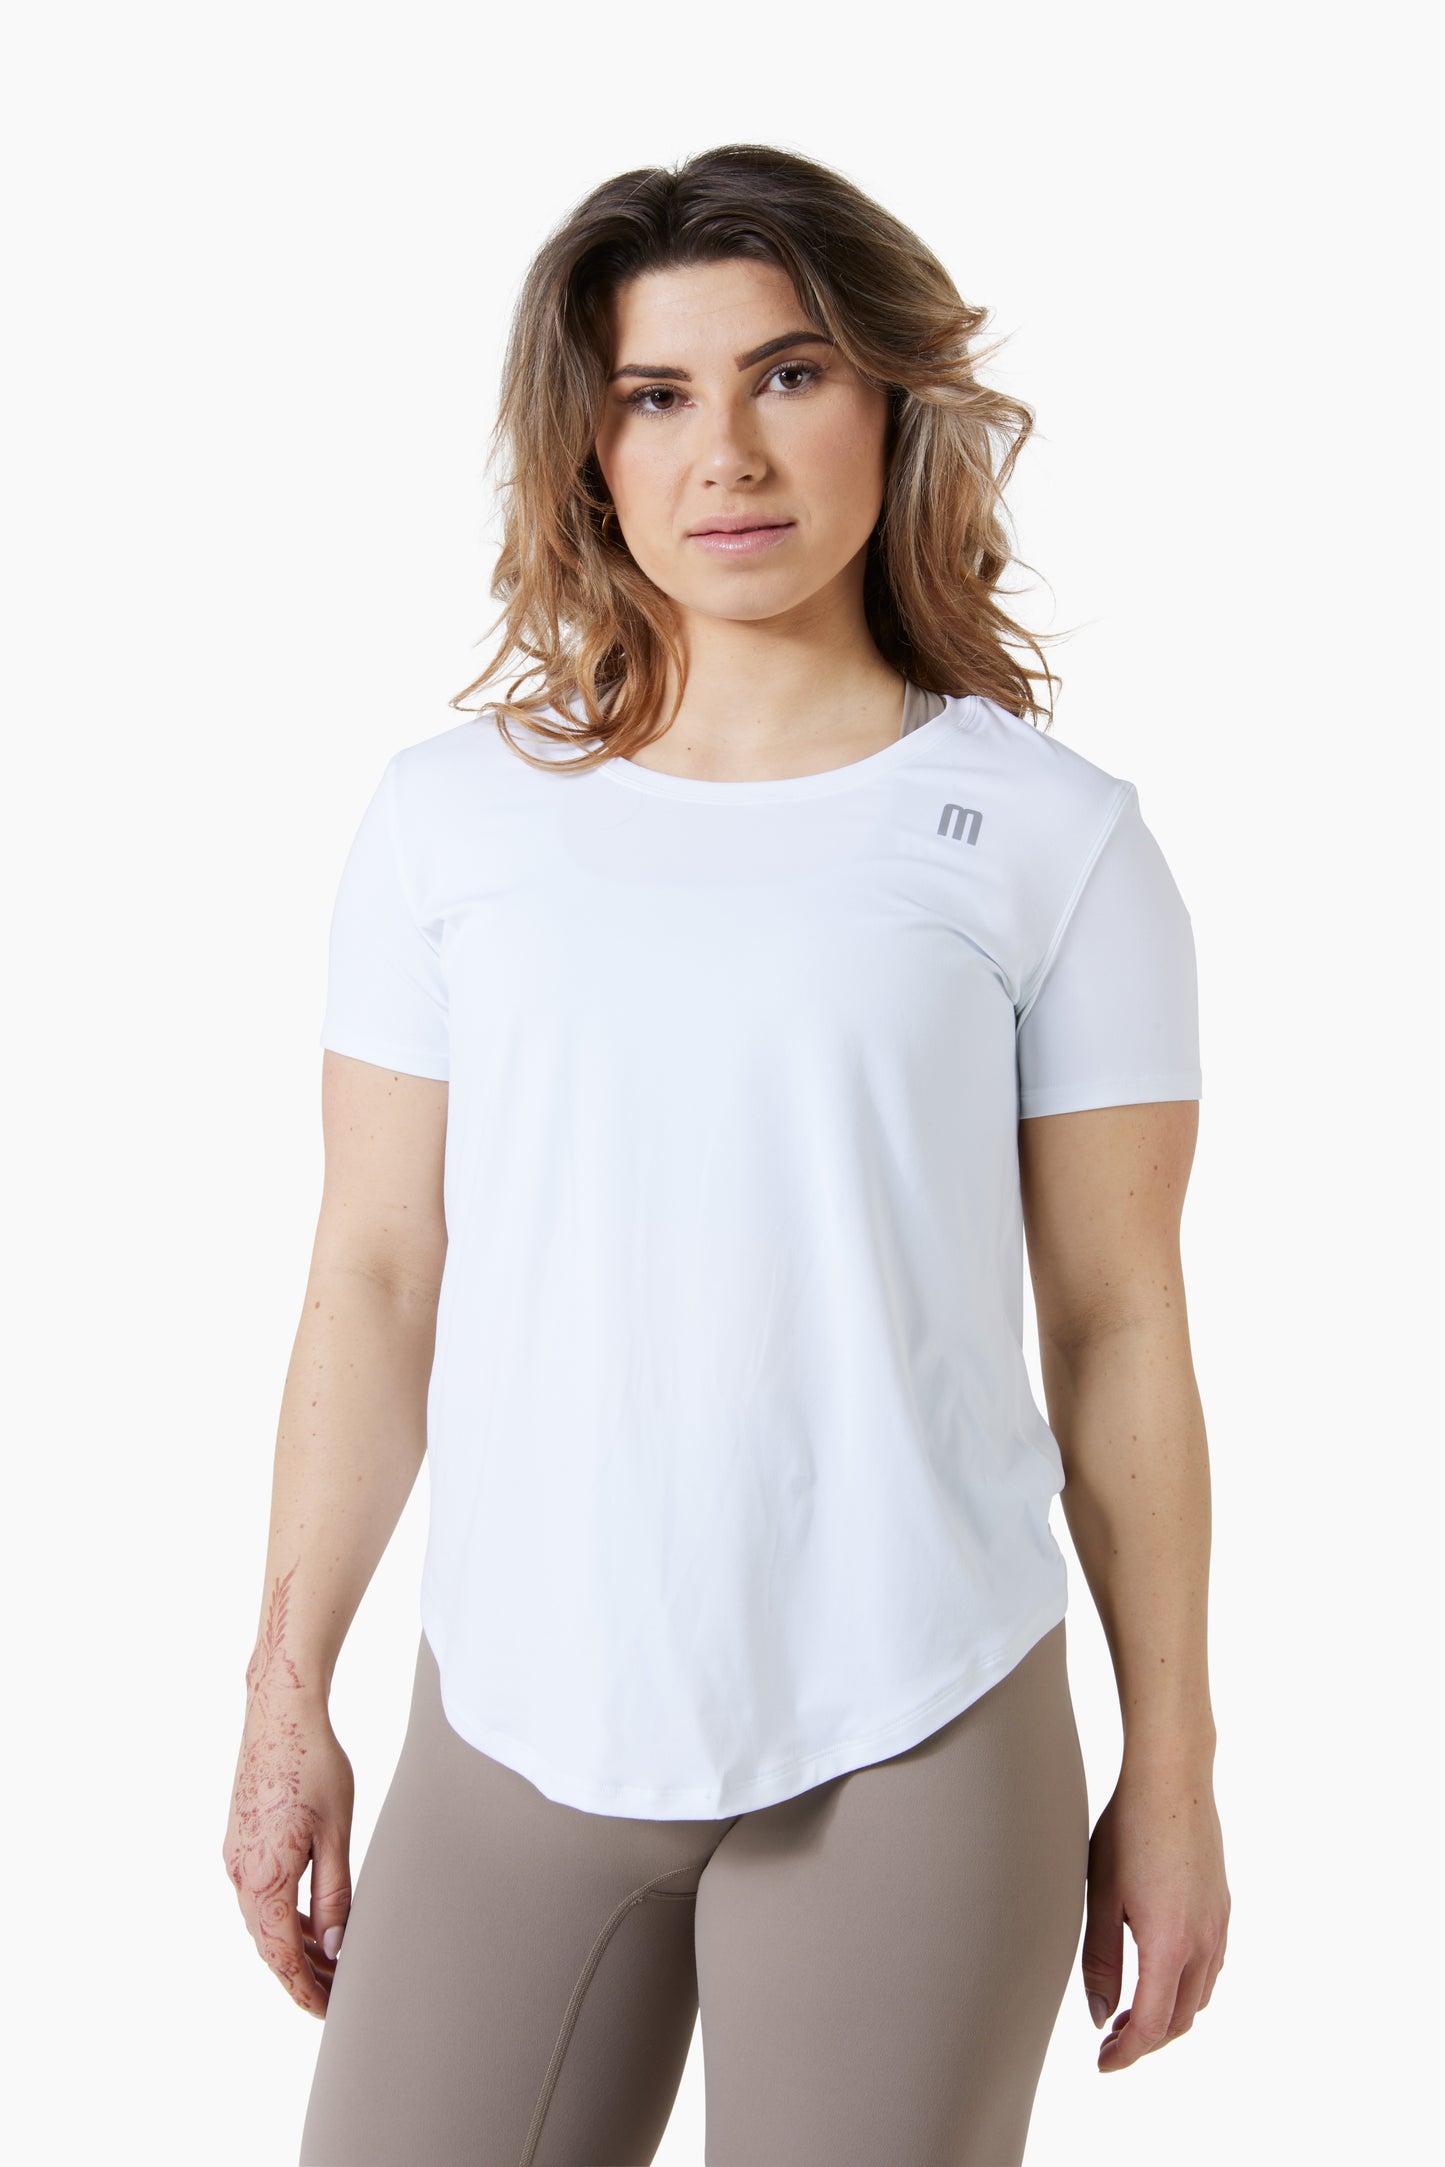 Woman t-shirt white